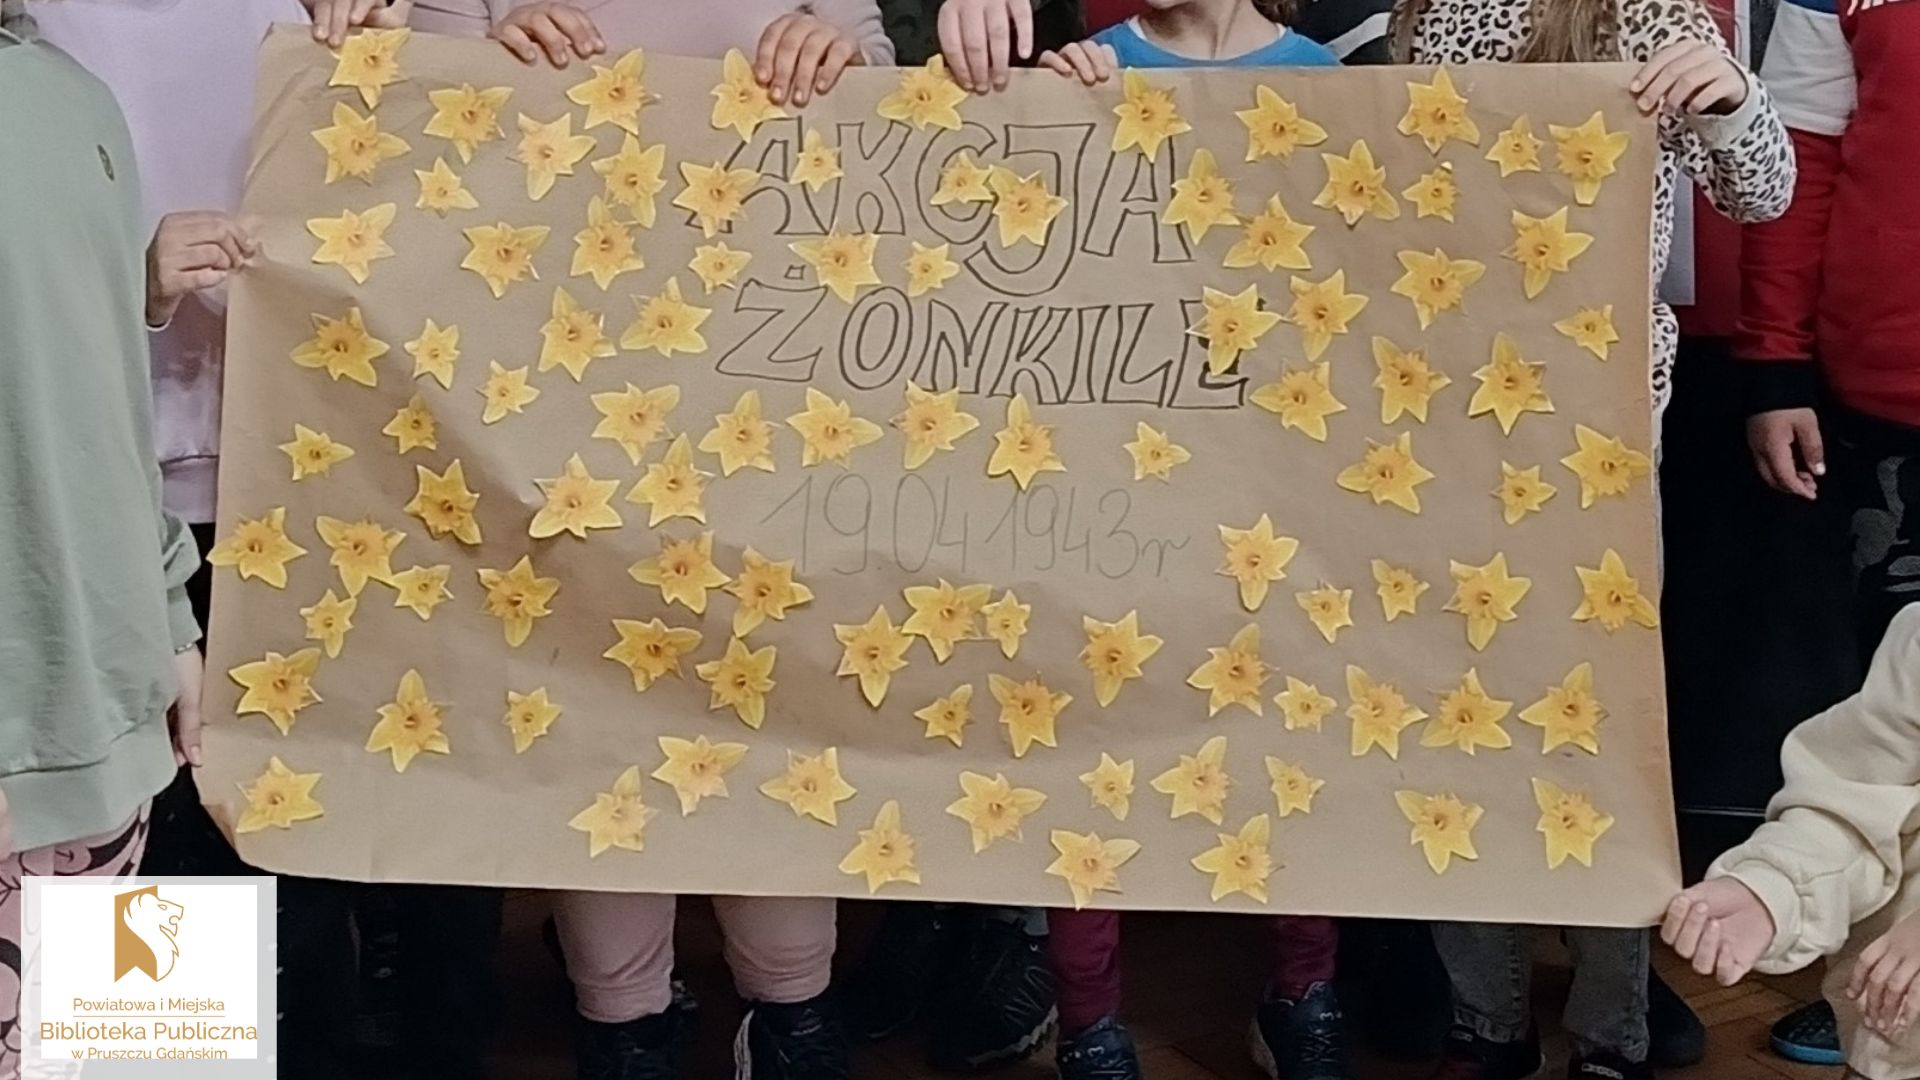 Arkusz szarego papieru z napisem Akcja Żonkile i przyklejonymi żółtymi kwiatami.